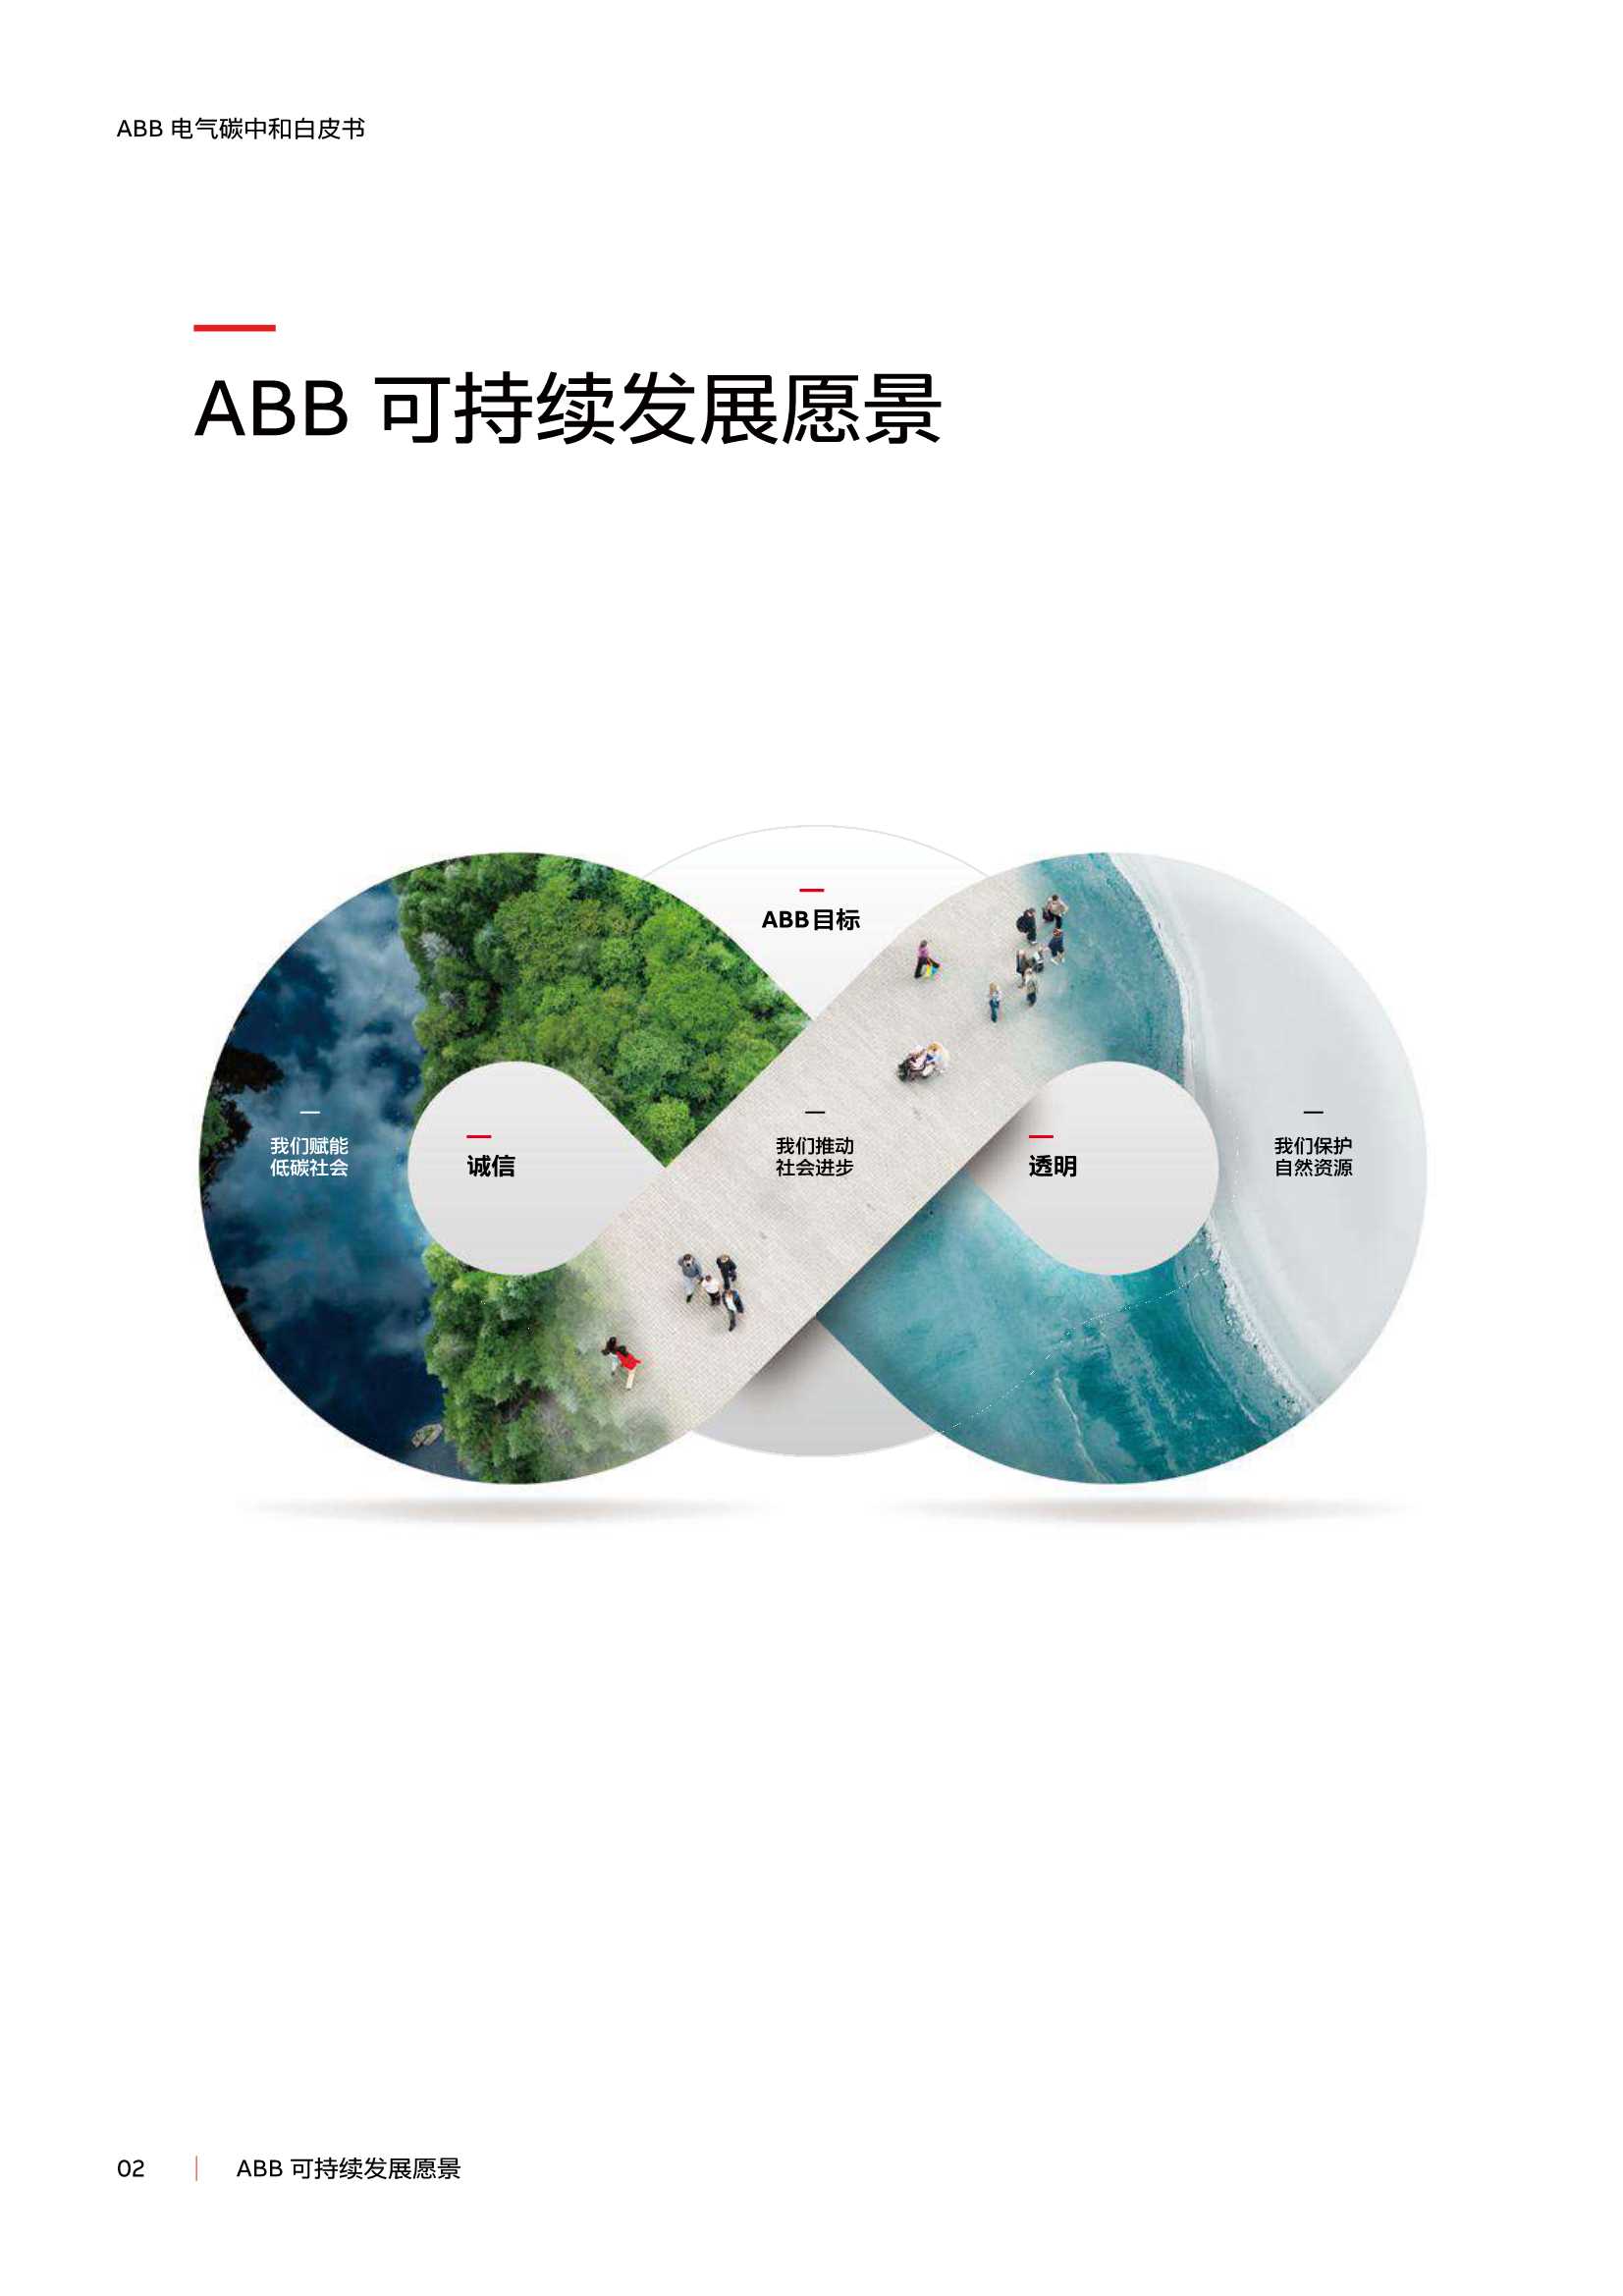 ABB-环保行业ABB电气碳中和白皮书：电气化 数字化赋能低碳社会-2021.12-59页